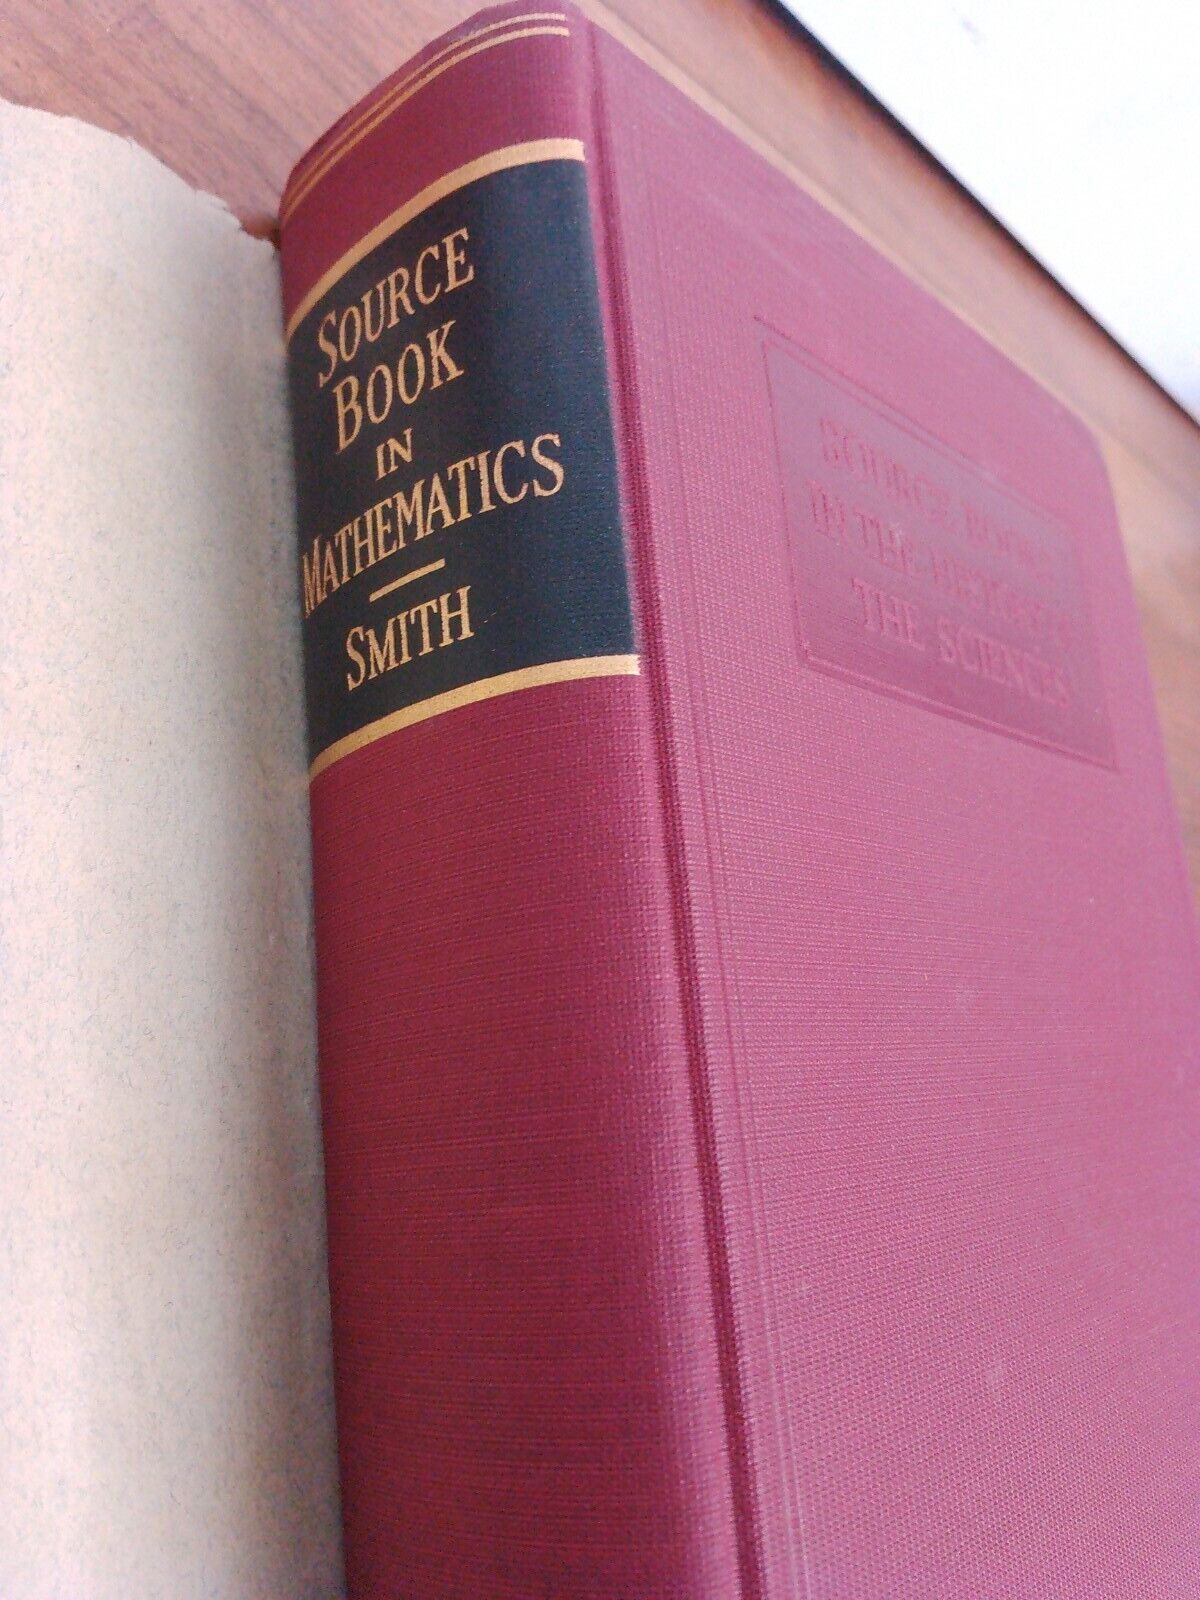 A source book in Mathematics, DE Smith, 1929 Rare